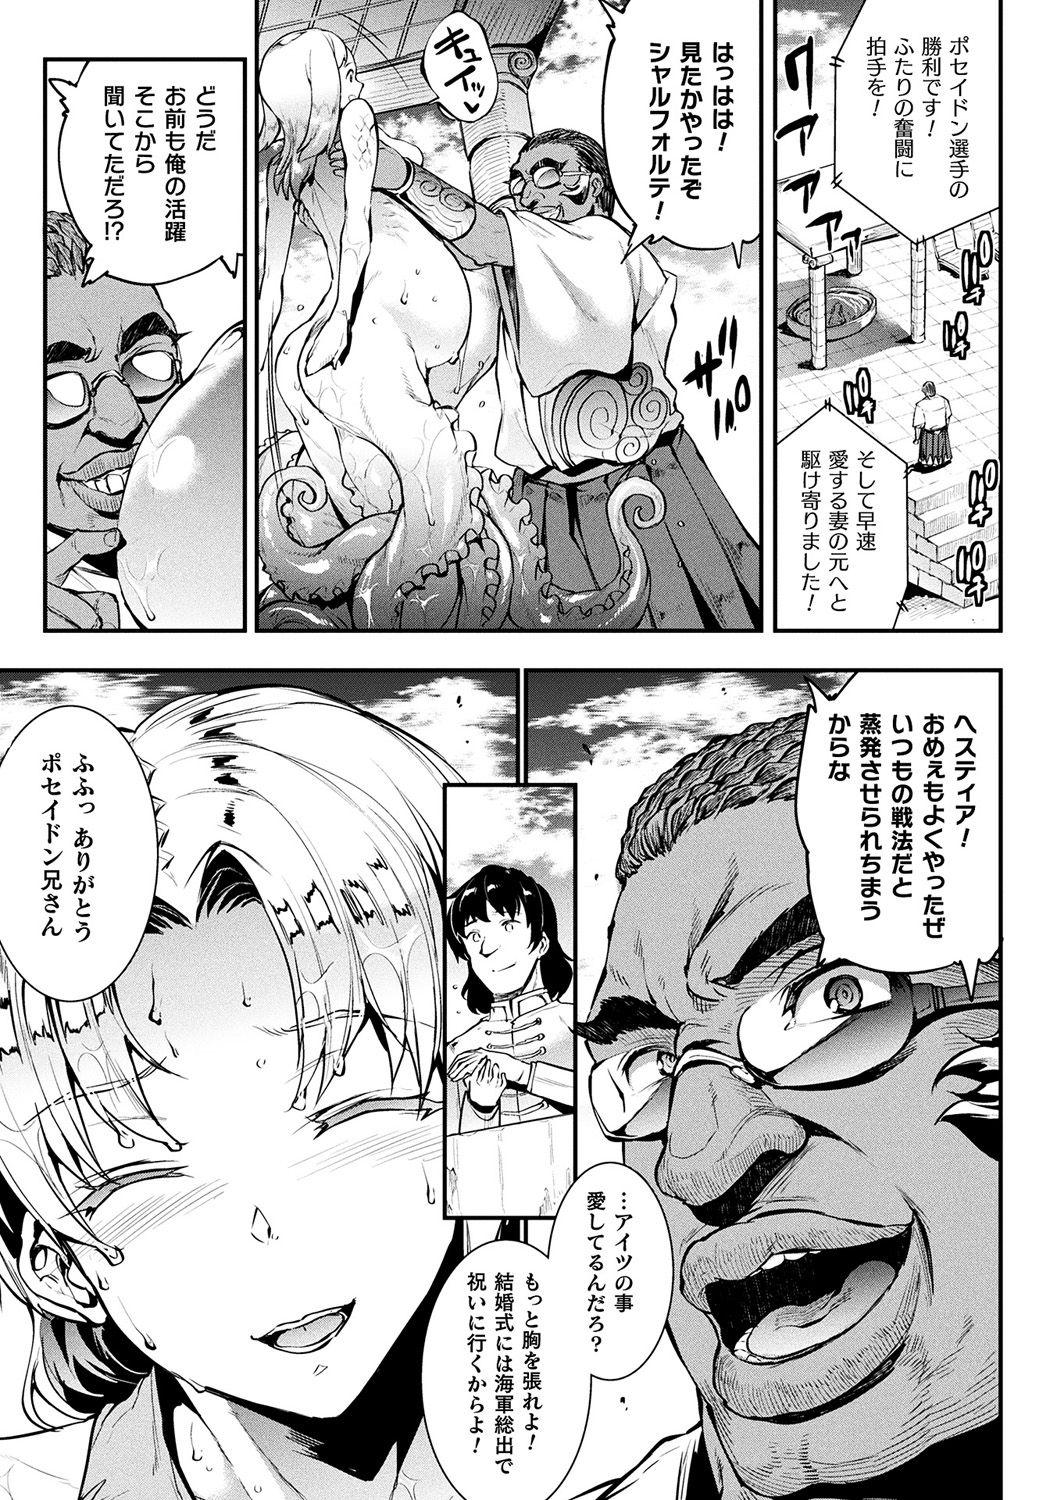 [Erect Sawaru] Raikou Shinki Igis Magia II -PANDRA saga 3rd ignition- + Denshi Shoseki Tokuten Digital Poster [Digital] 100